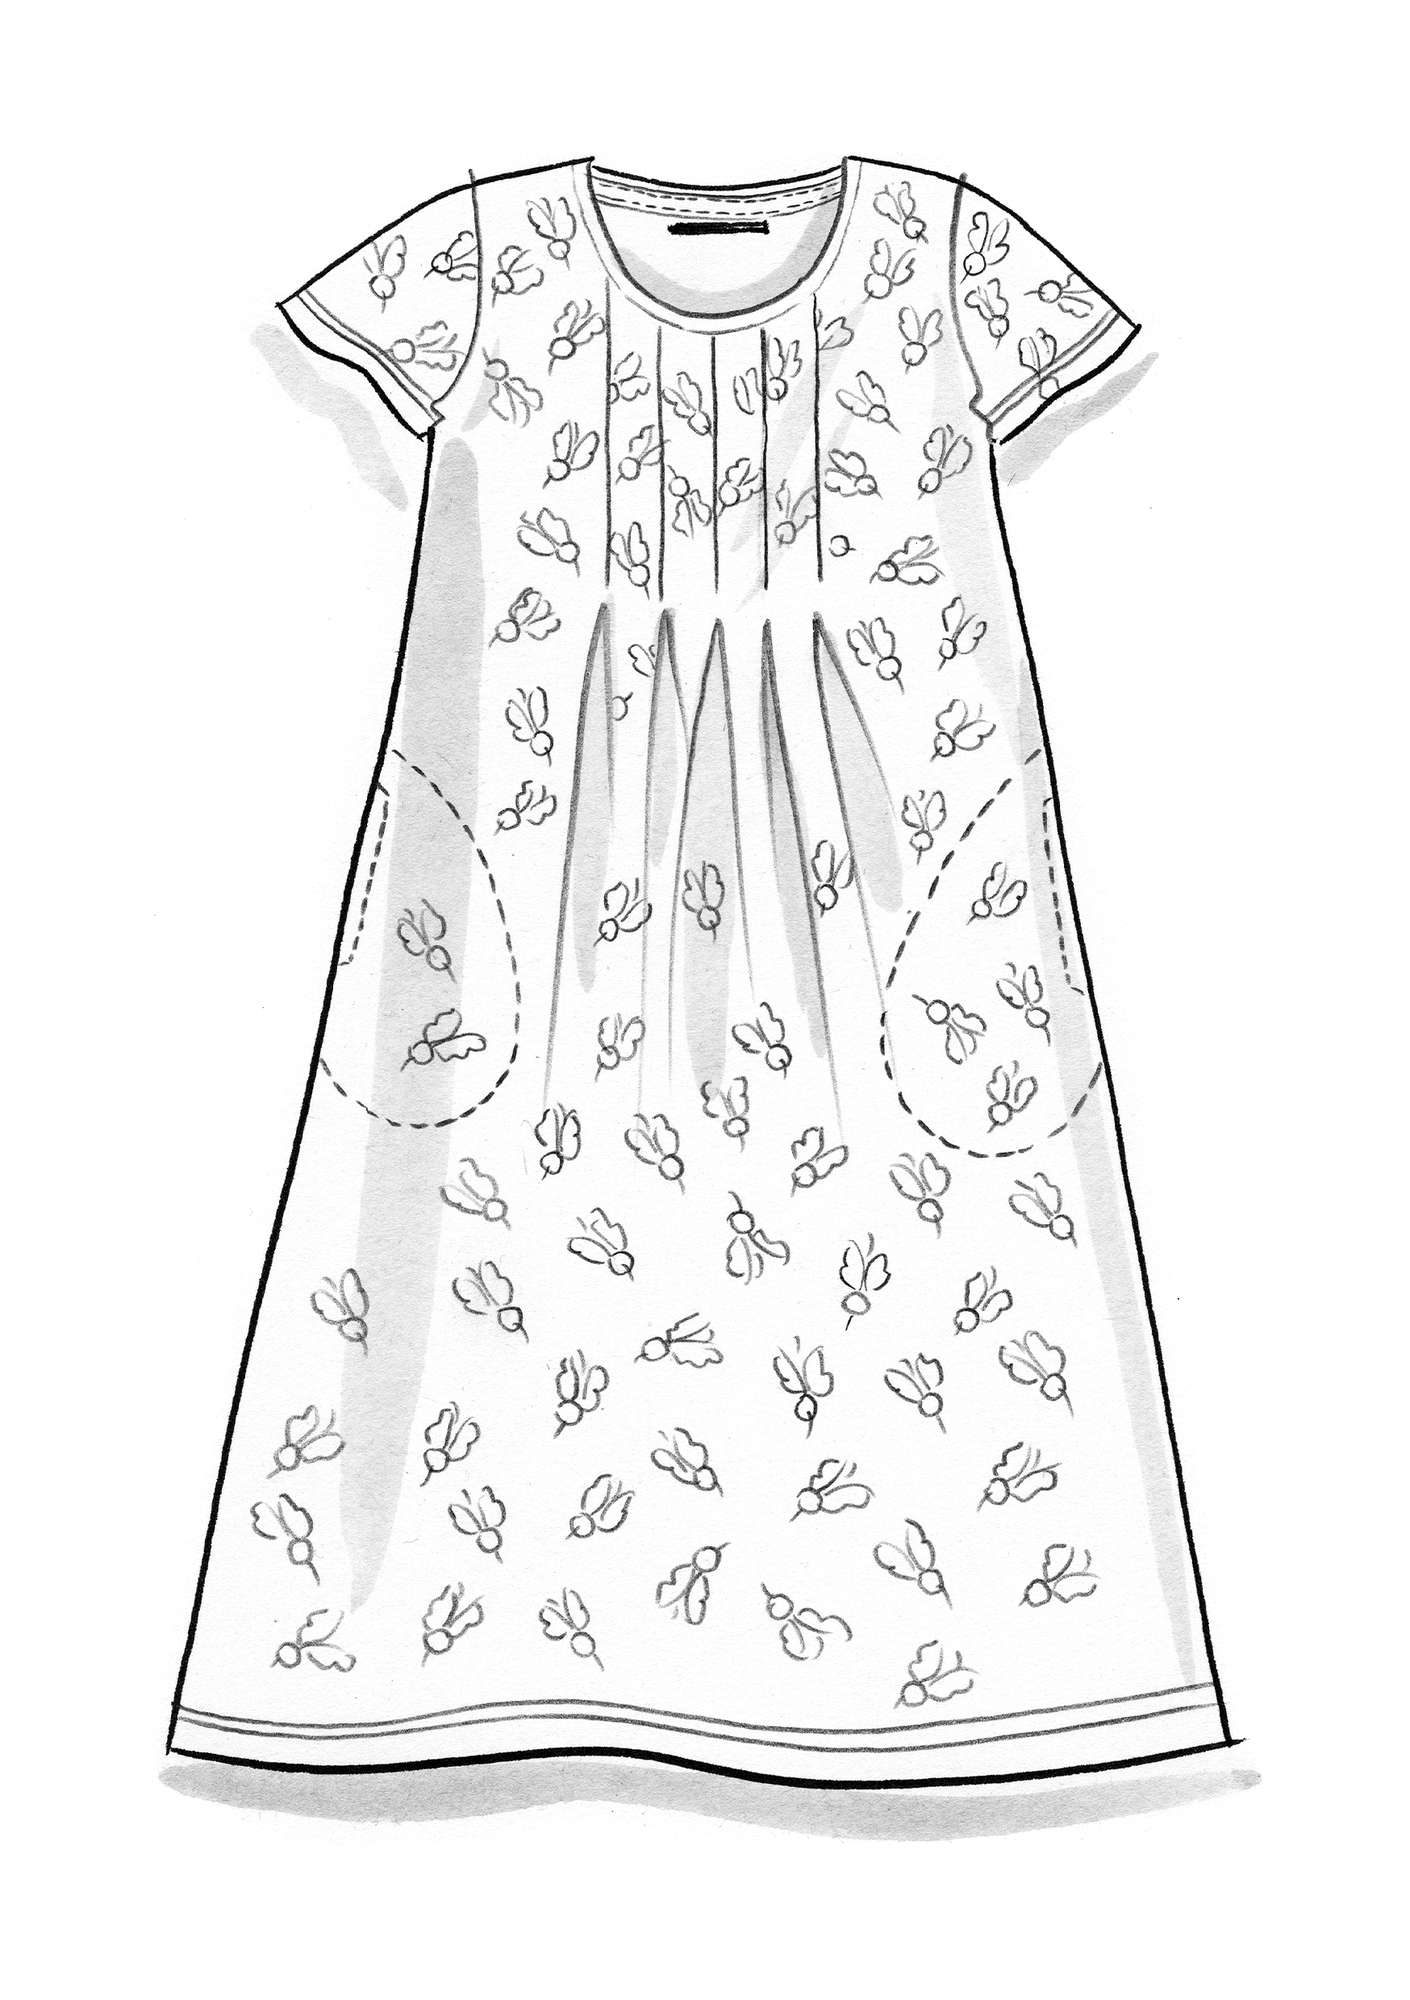 Tricot jurk  Beety  van biologisch katoen donkerolijf/dessin